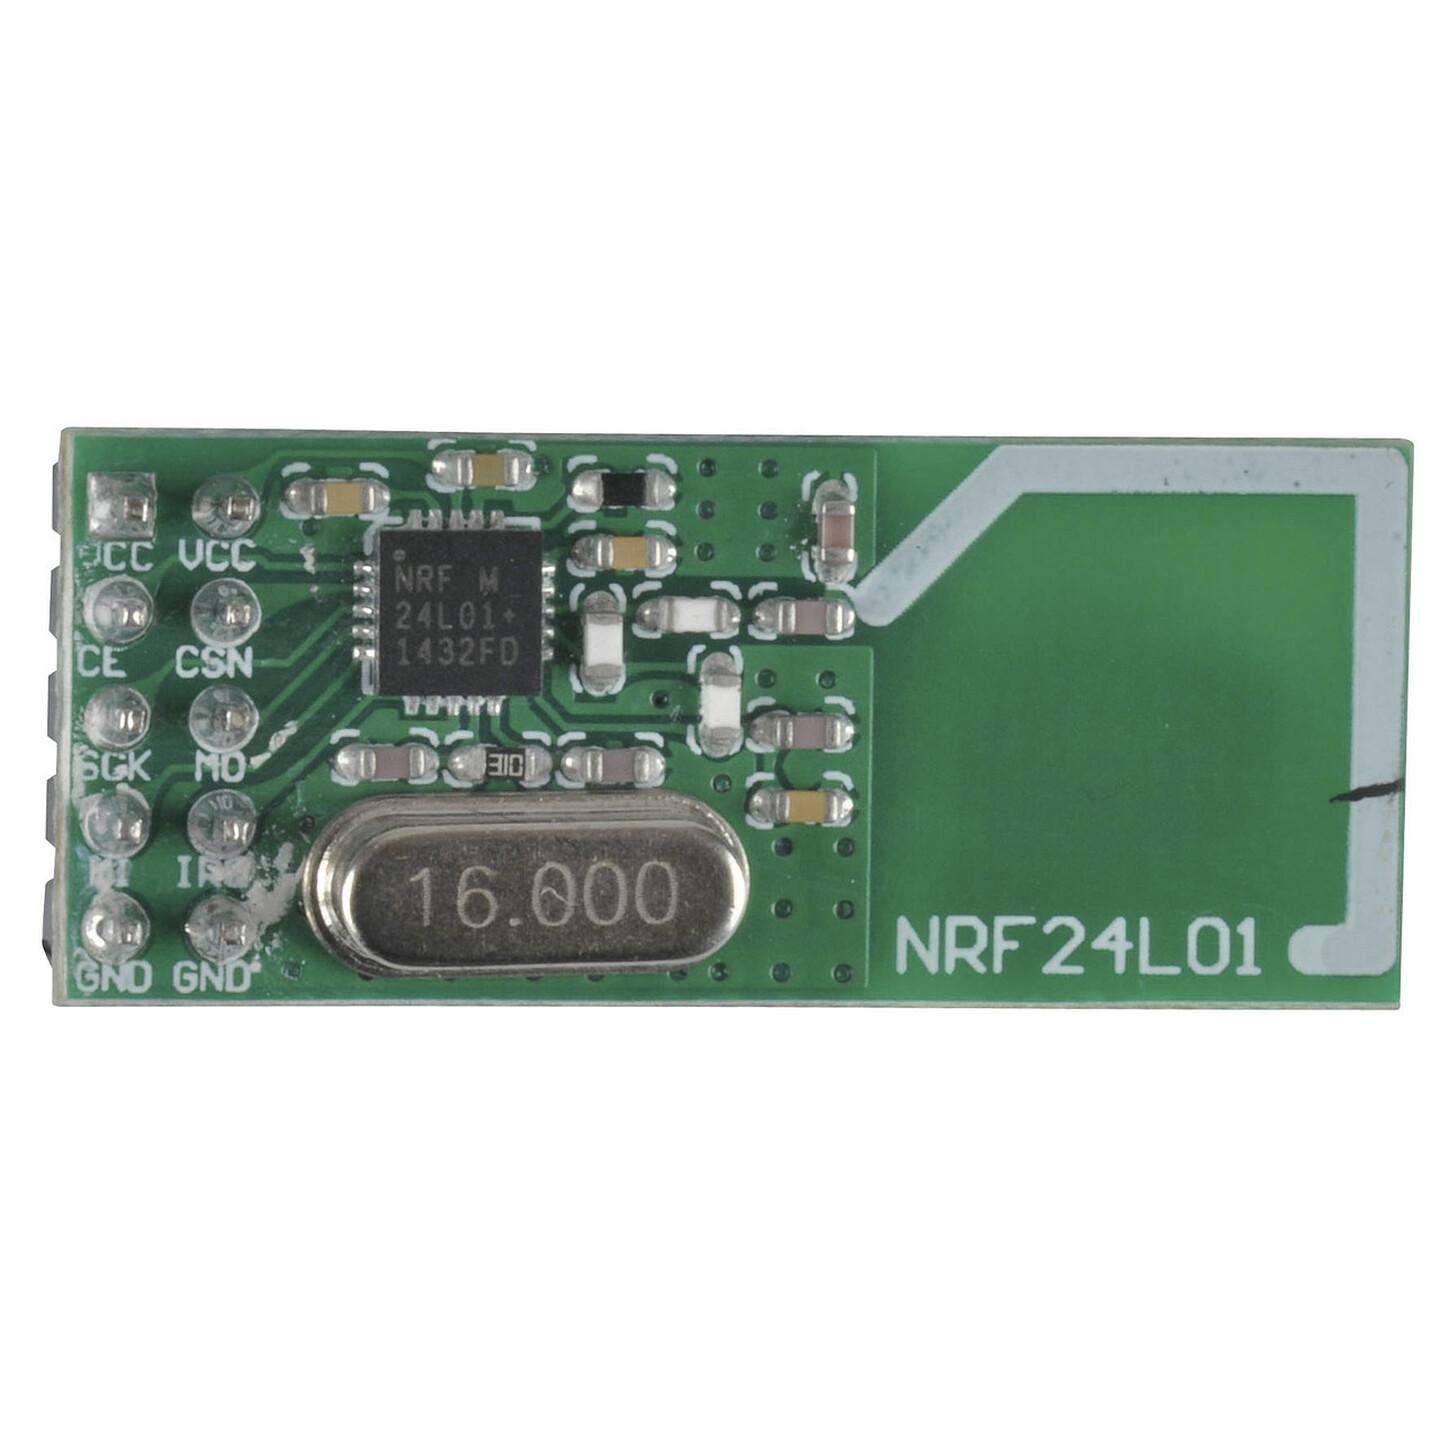 Duinotech Arduino Compatible 2.4GHz Wireless Transceiver Module